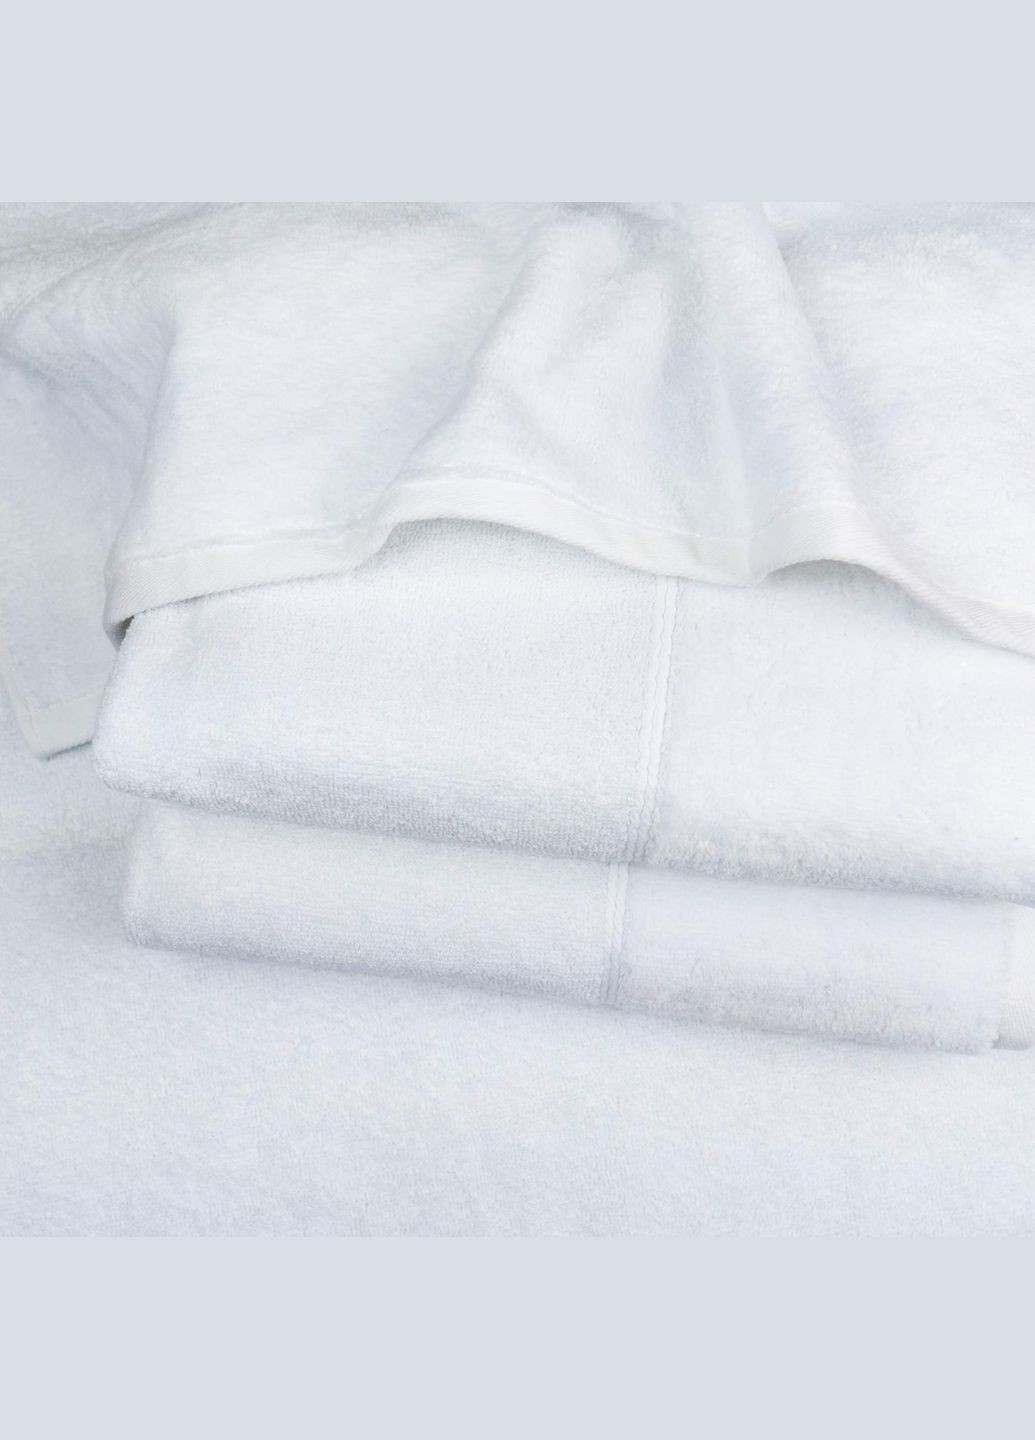 GM Textile рушник для обличчя та рук махра/велюр 40x70см преміум якості milado 550г/м2 (білий) білий виробництво -